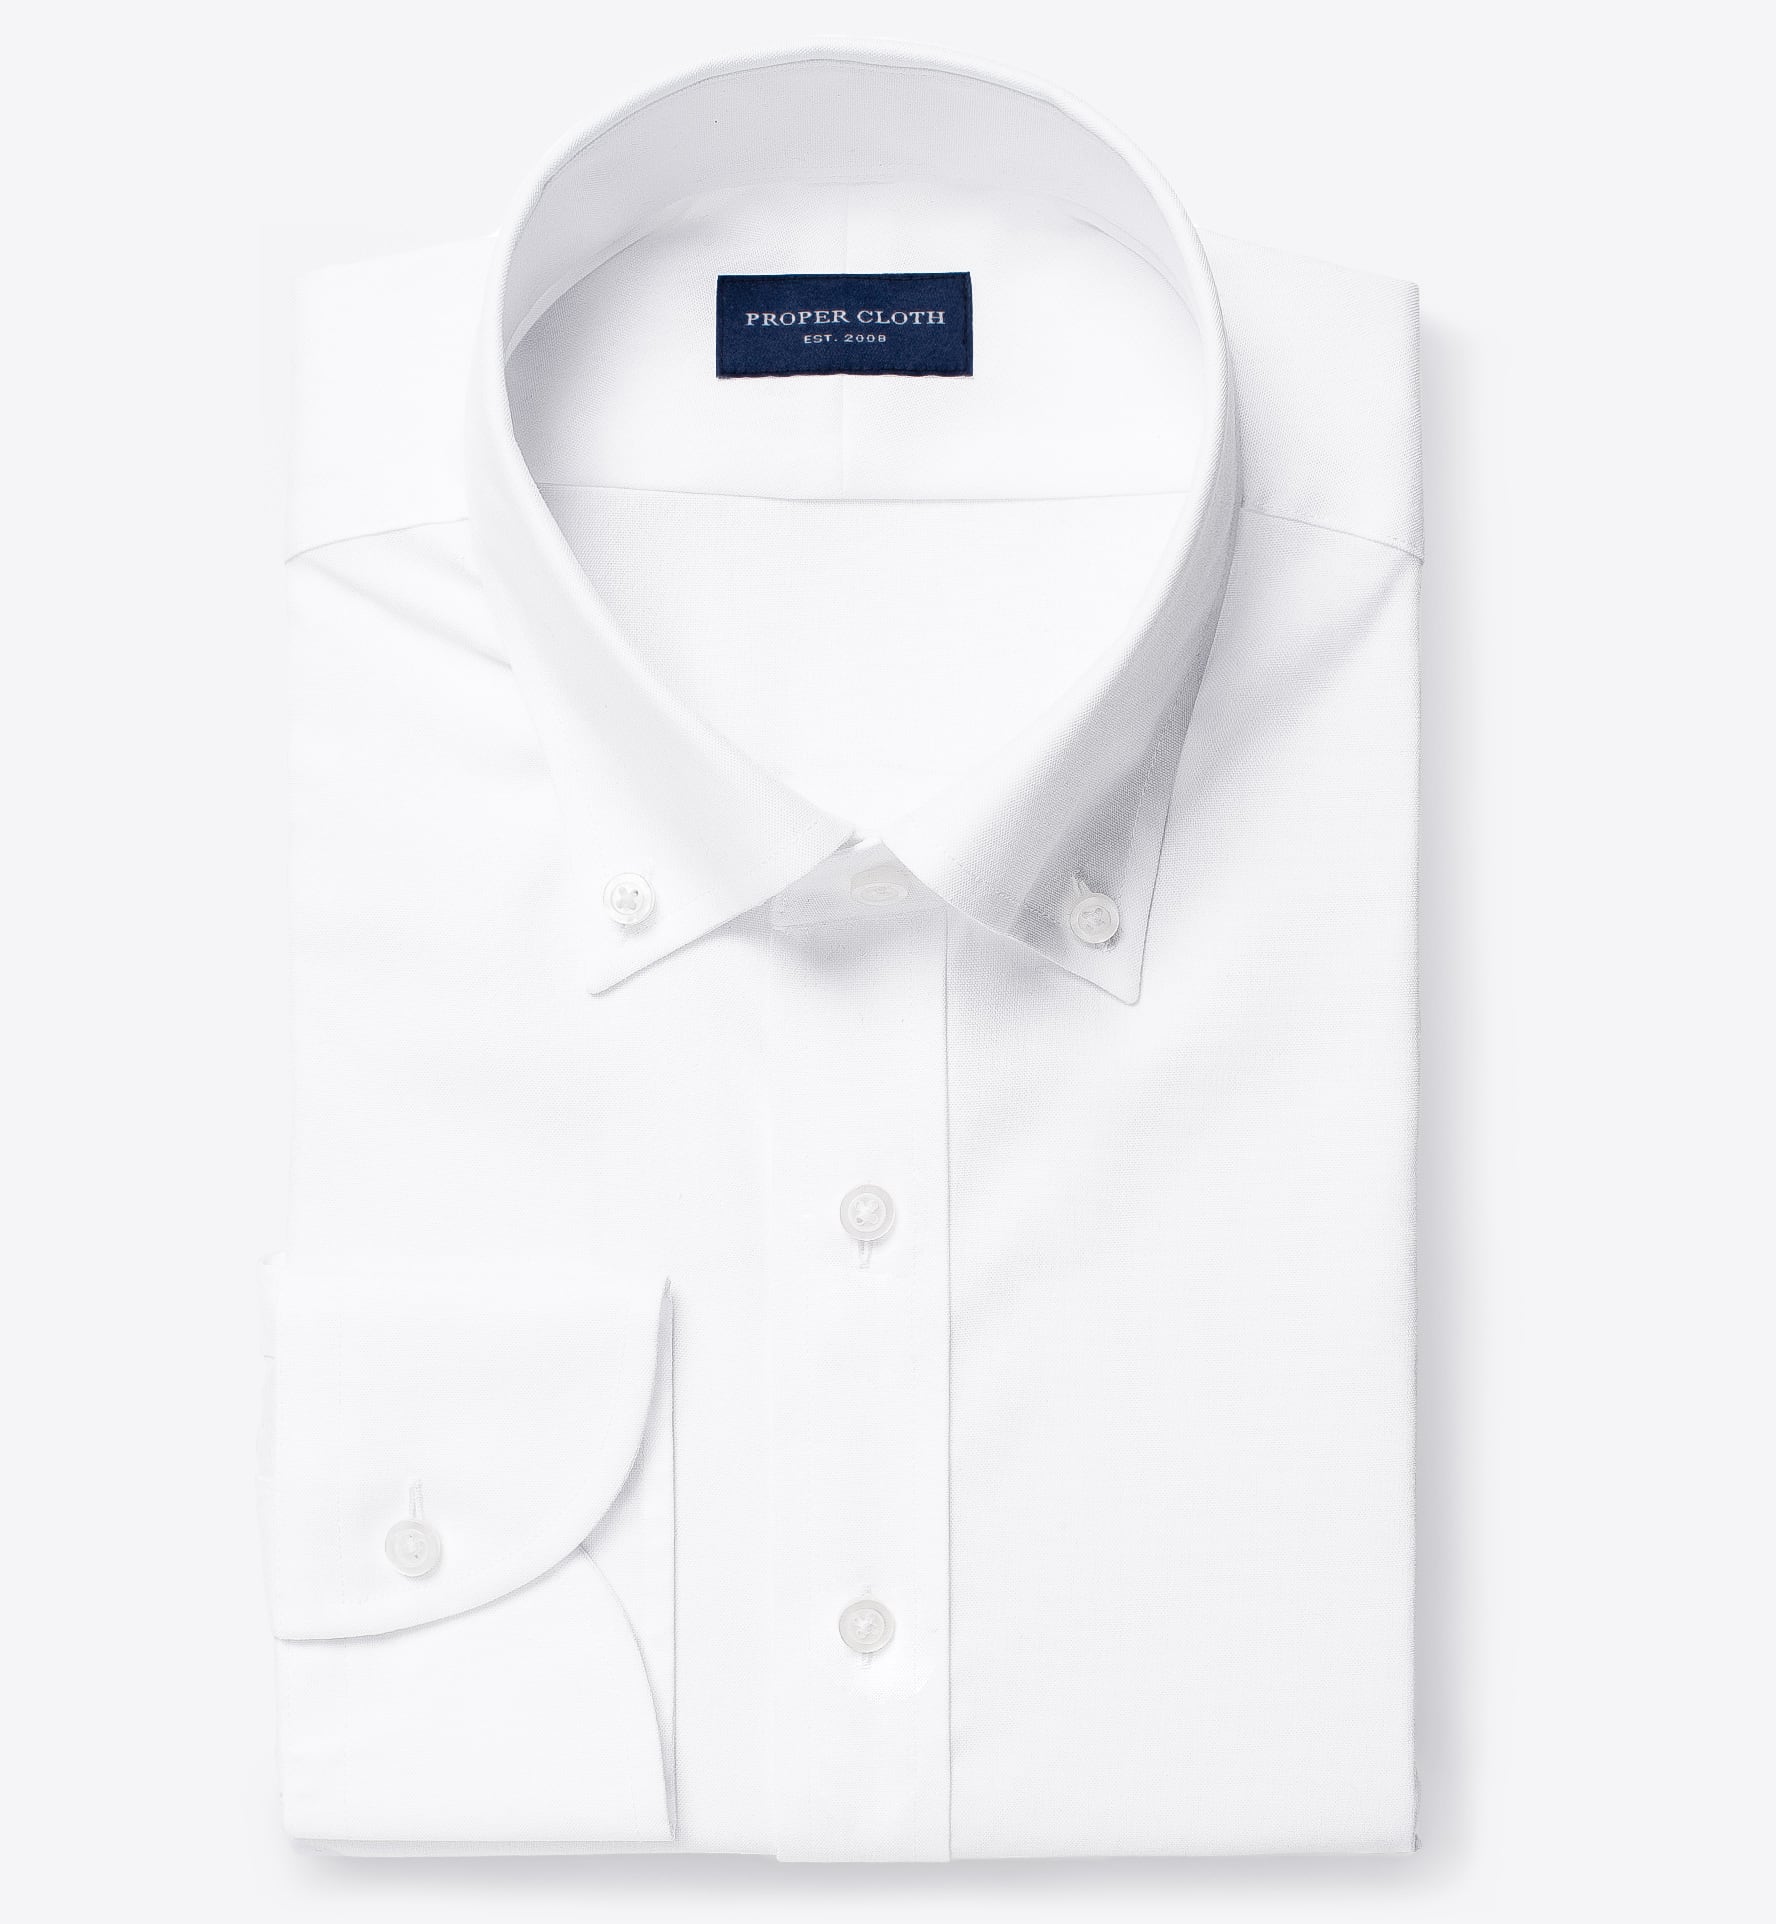 button down white dress shirts